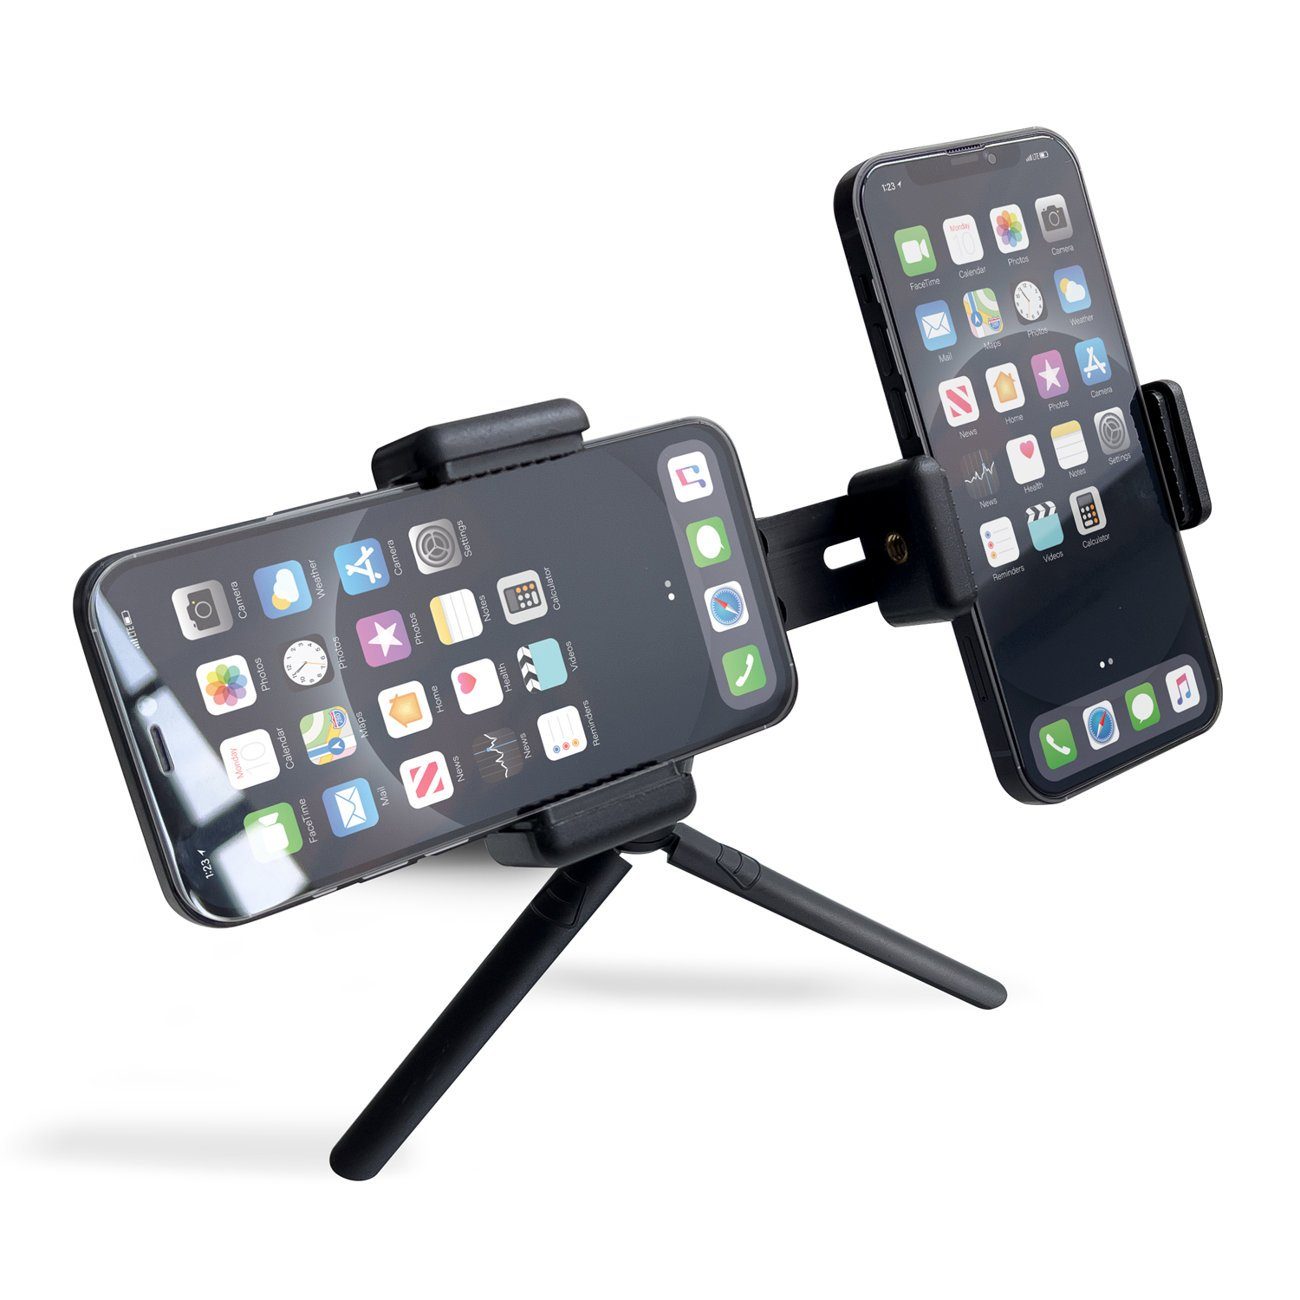 Stativ Ständer verstellbarer Smartphone-Halterung cofi1453 Zweifach Halterung schwarz Smartphone-Halter mit